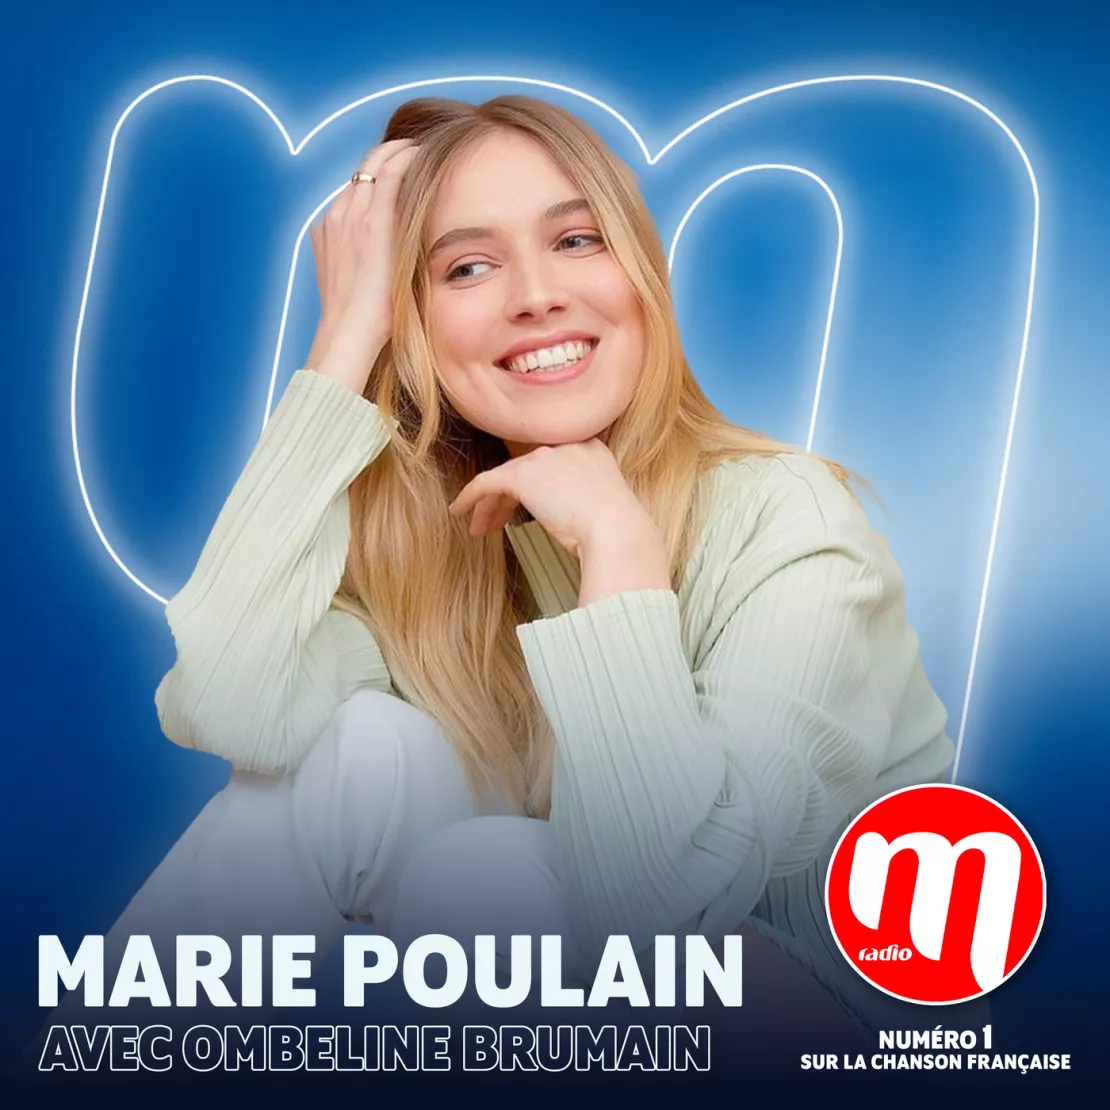 Marie Poulain